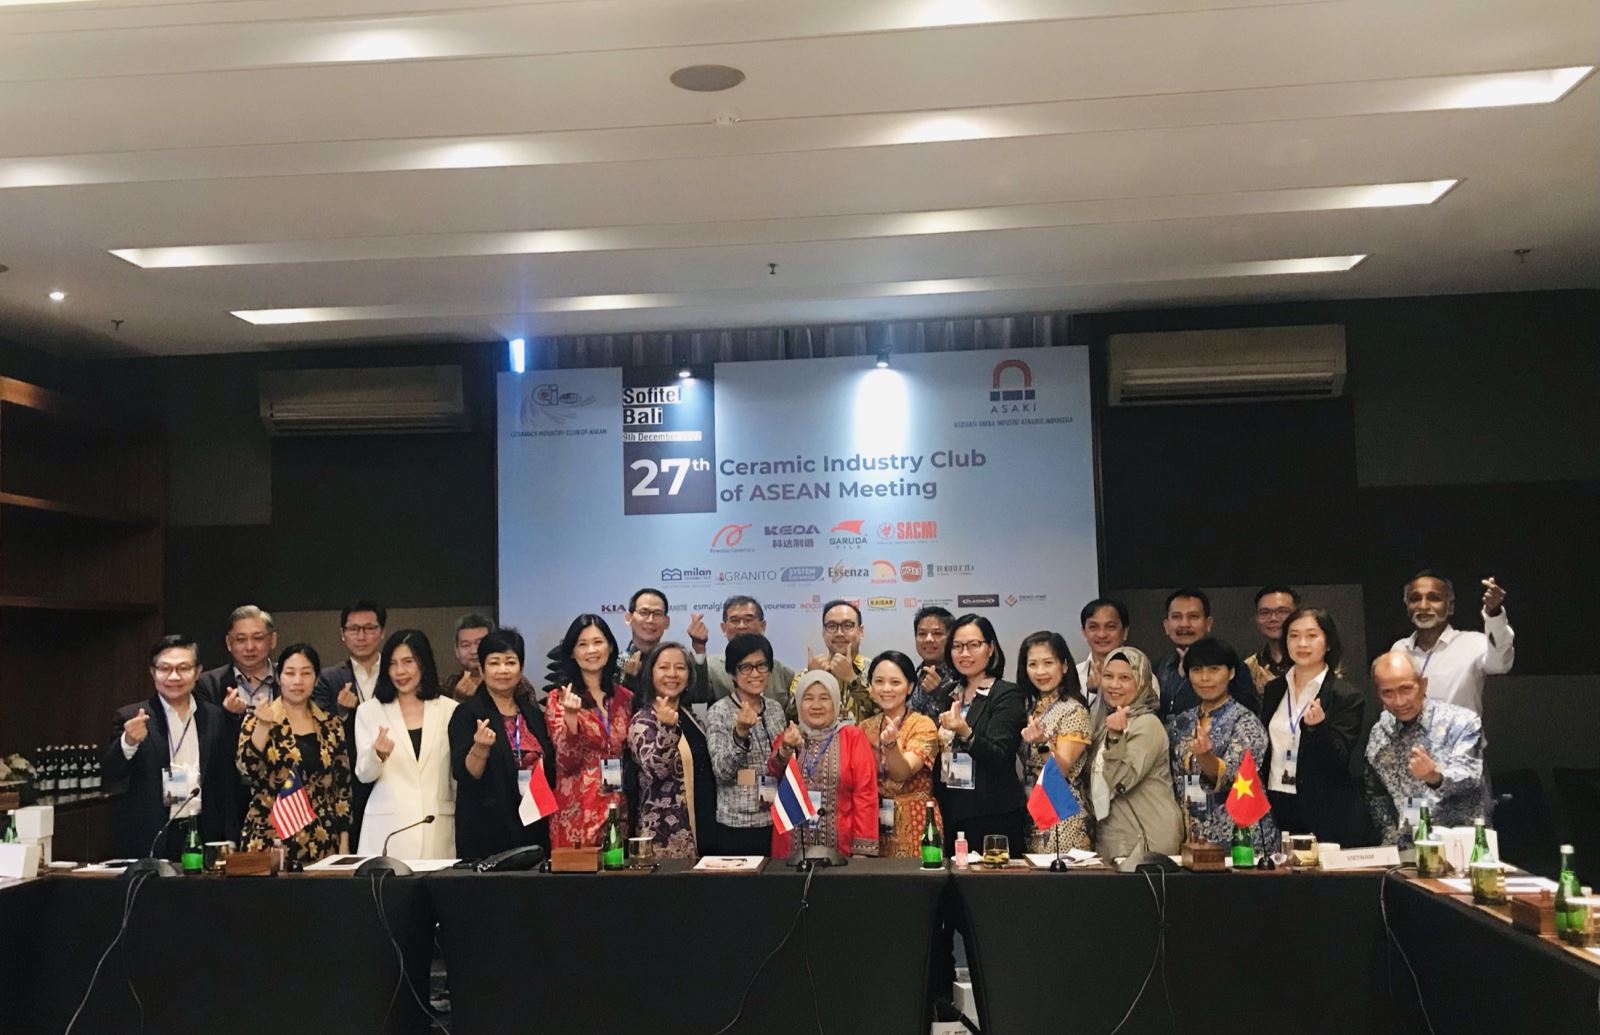 VIBCA tham dự Hội nghị công nghiệp gốm sứ Đông Nam Á (CICA) lần thứ 27 tại Indonesia